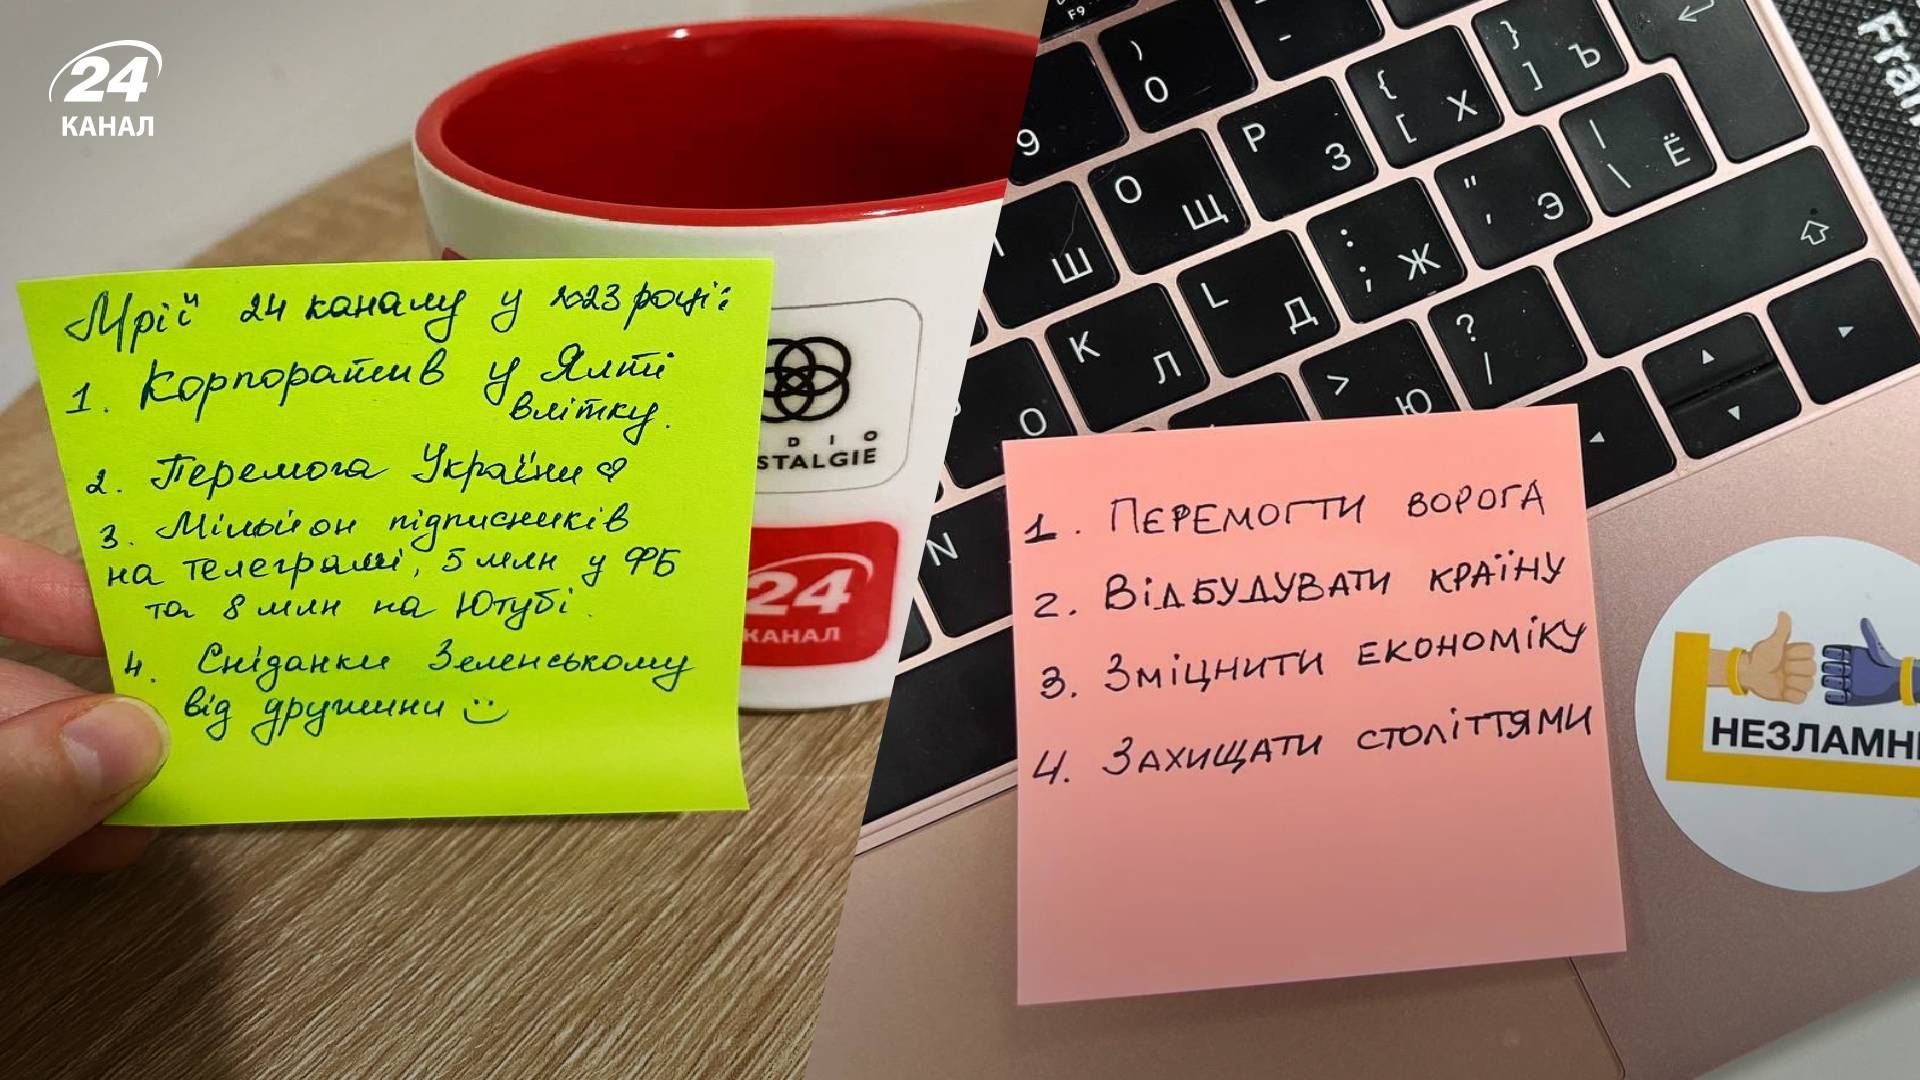 Не поездка в Париж, а победа: украинцы публикуют свои списки желаний - 24 Канал